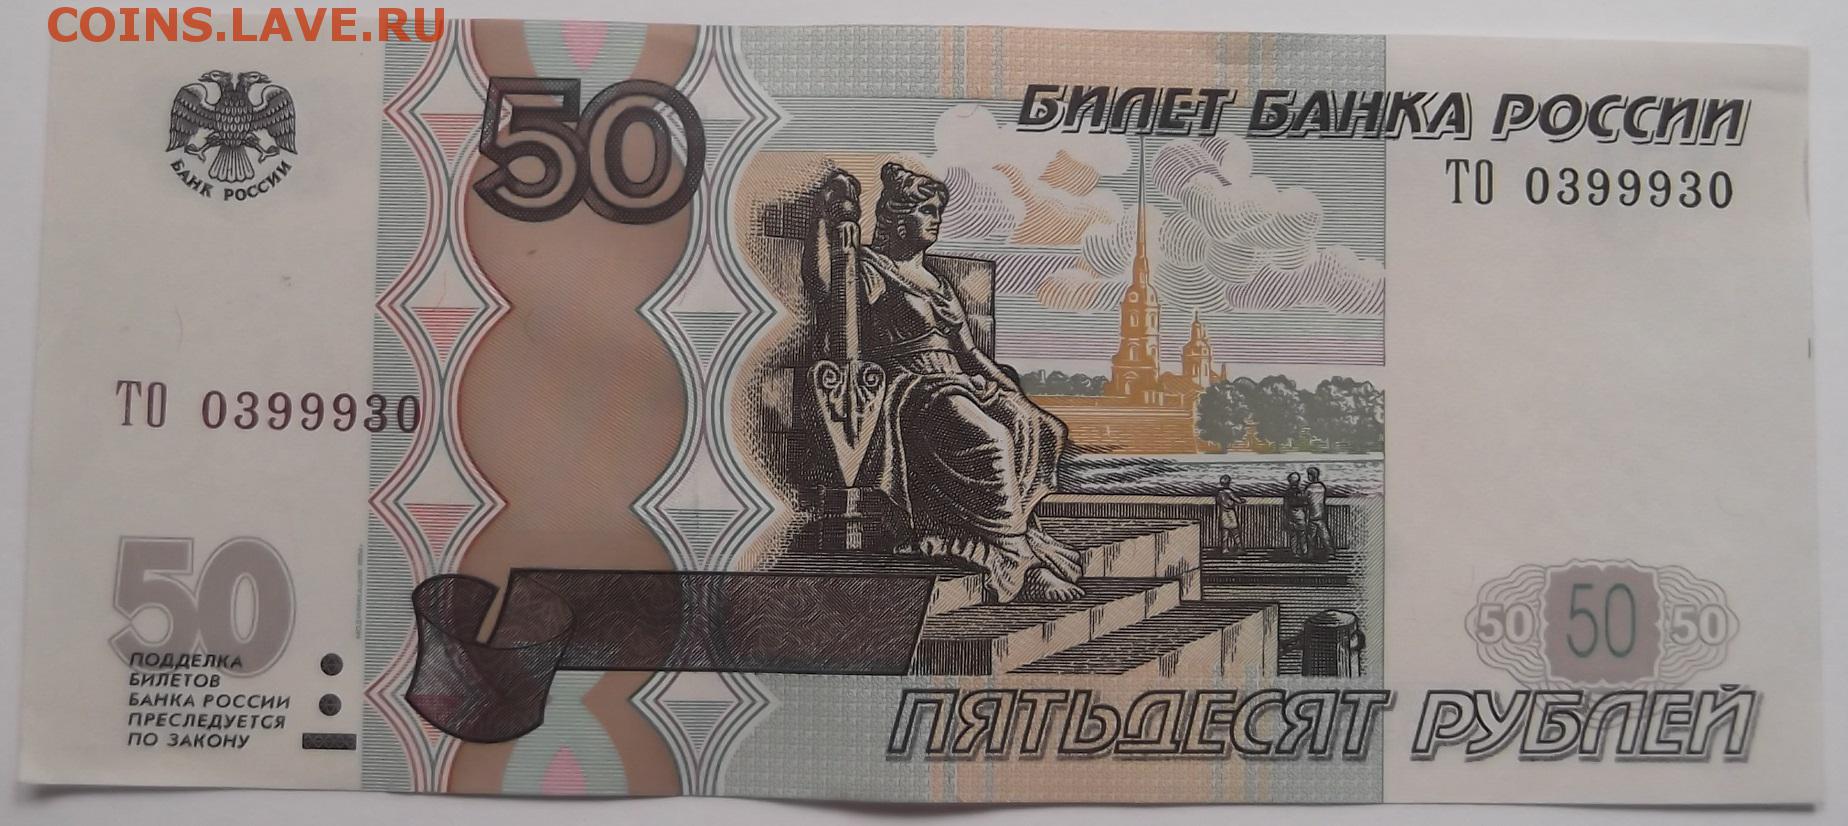 Сторона пятьдесят. 50 Рублей. Купюра 50 рублей. Российские банкноты 50 рублей. Банкнота 50 руб.